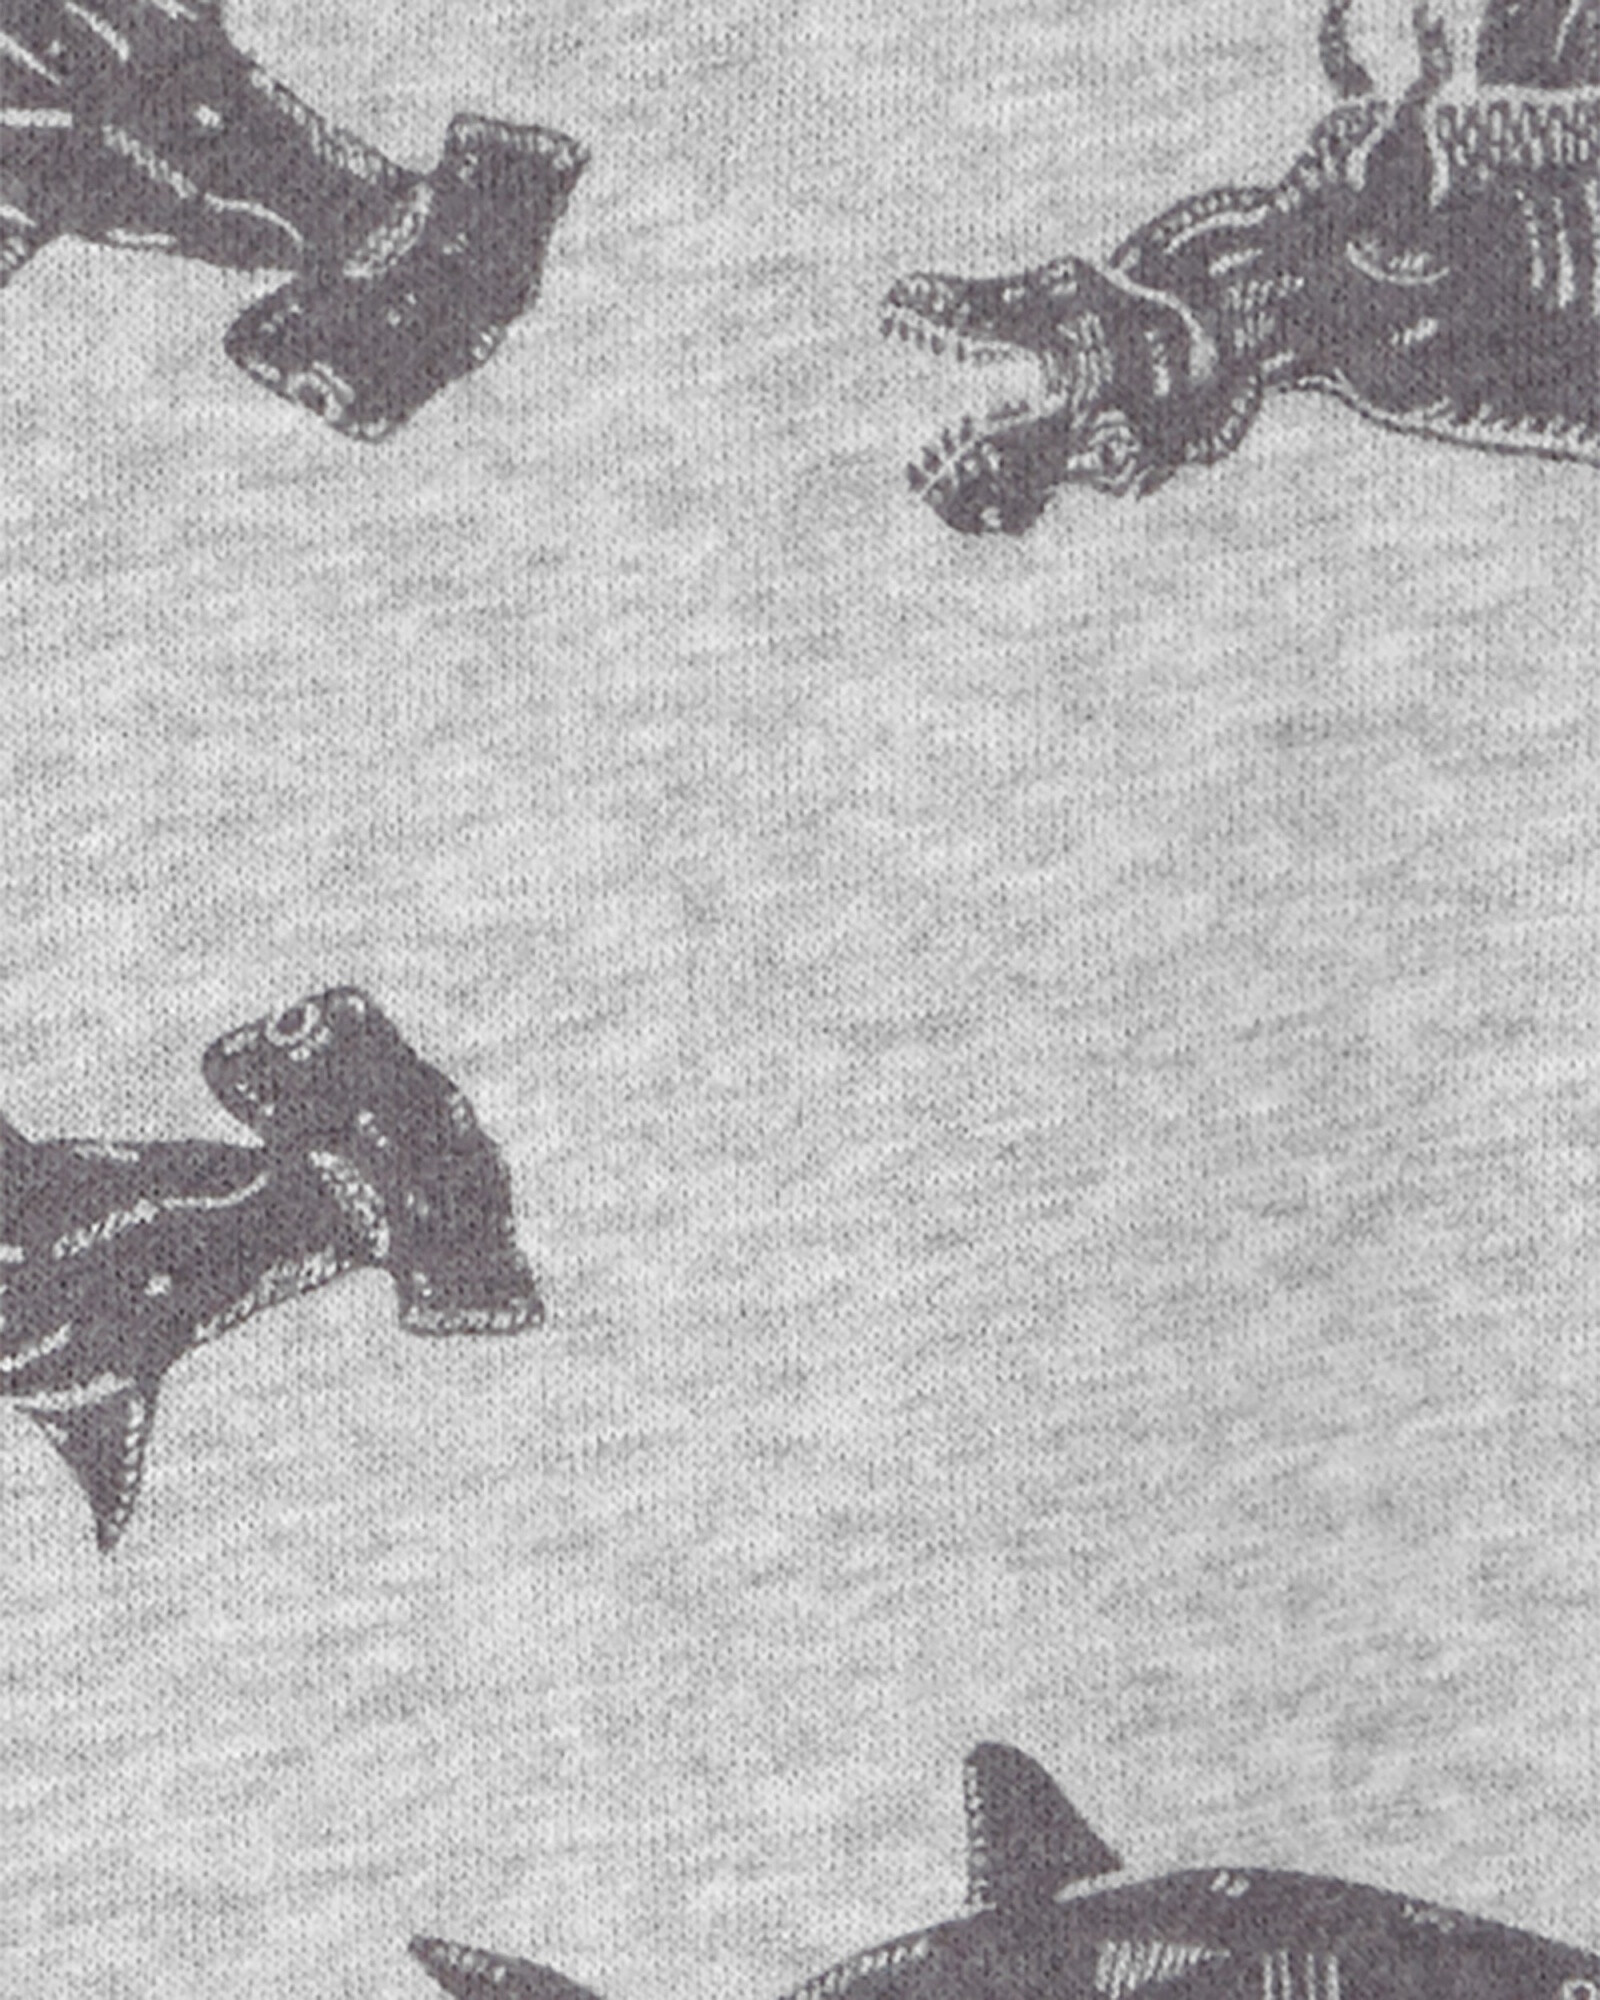 Campera de algodón, gris, diseño dinos y tiburones. Talles 3-24M Sin color